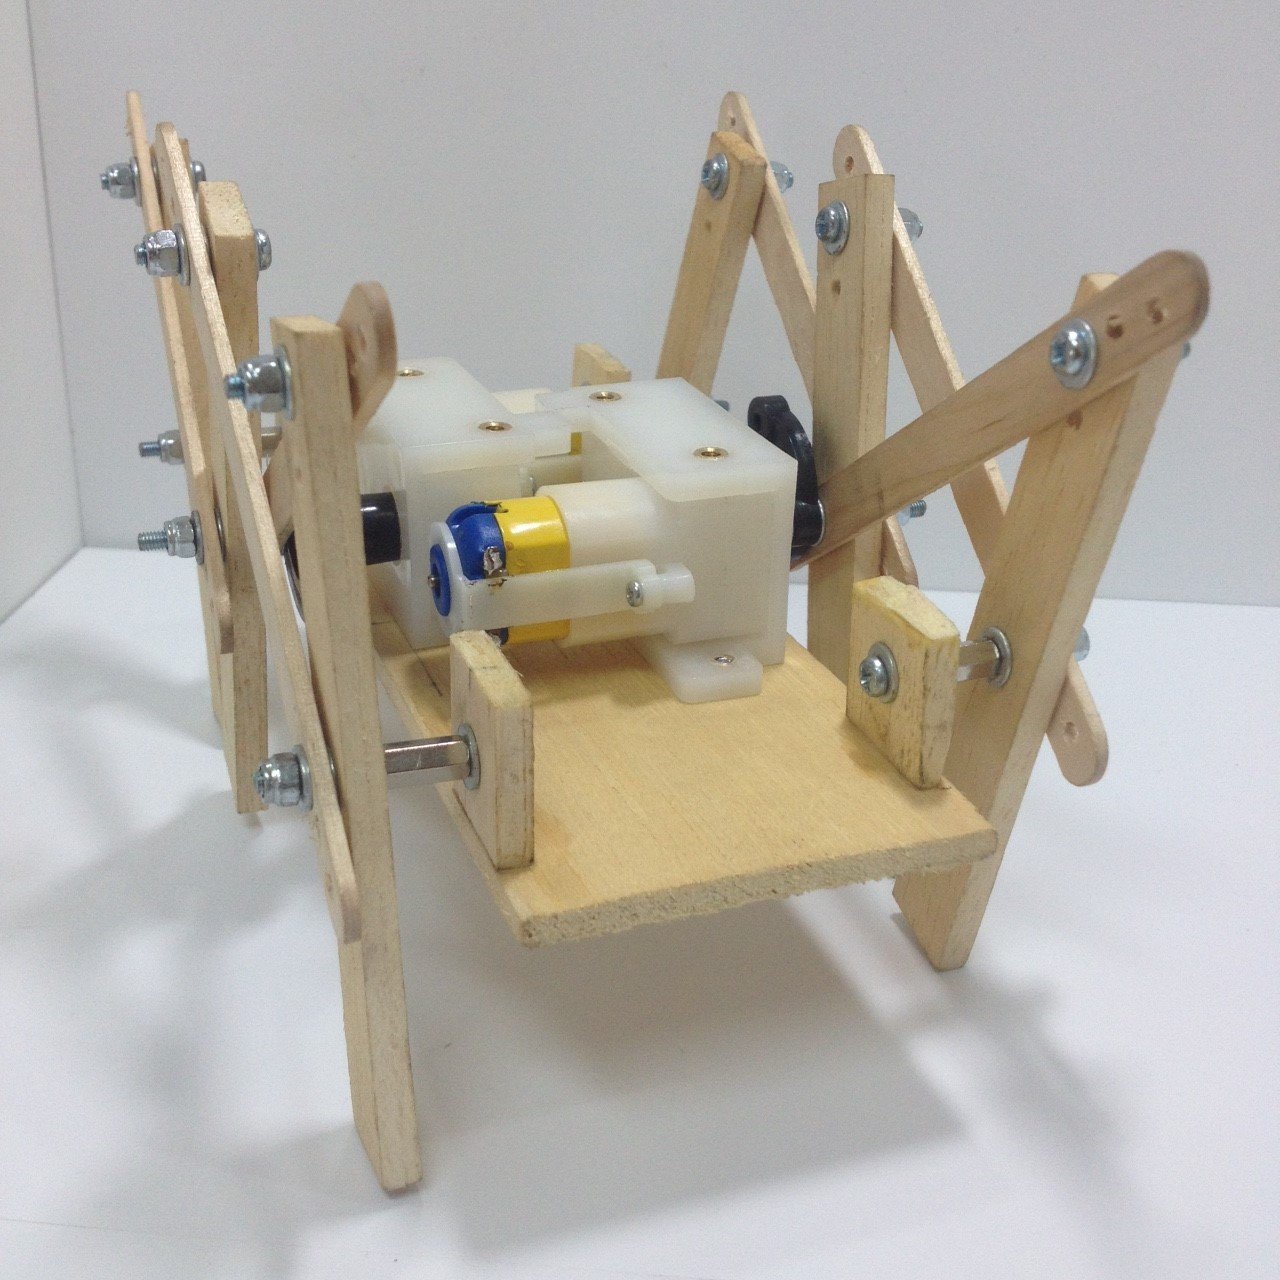 หุ่นยนต์หกขาโครงสร้างไม้ รุ่น Modified ประกอบสำเร็จ (ไม่รวมรีโมต)